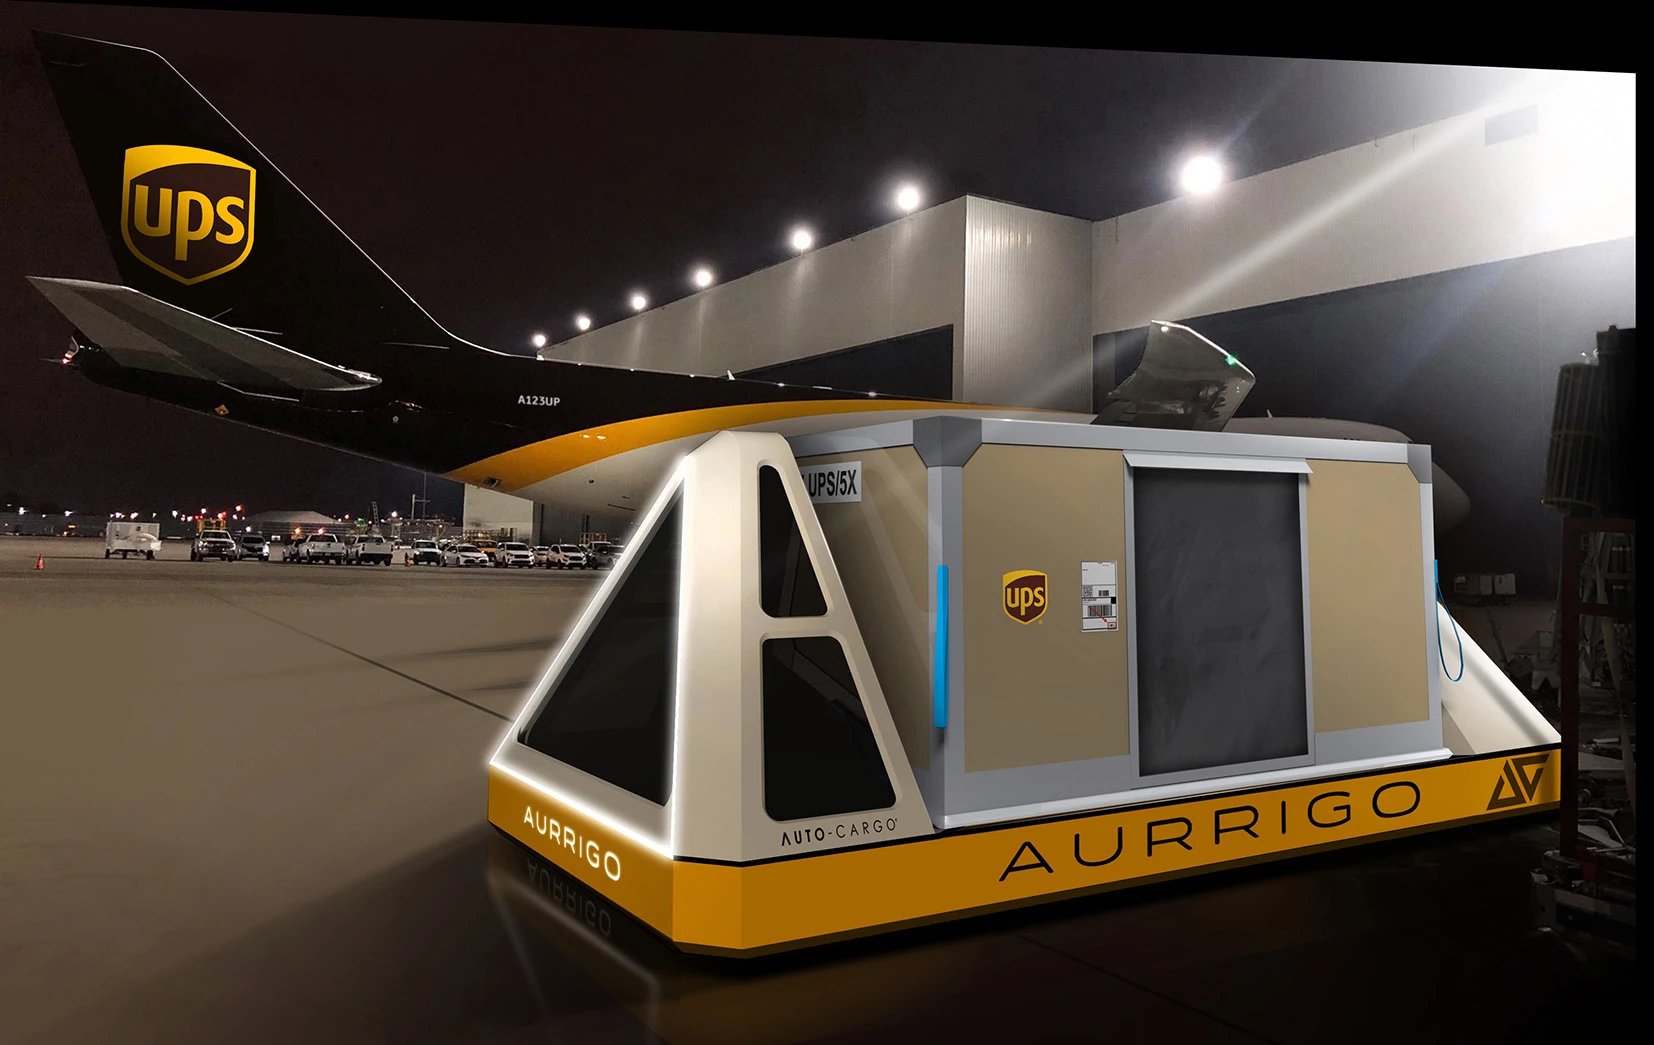 Aurrigo Auto-Cargo Concept for UPS Partnership